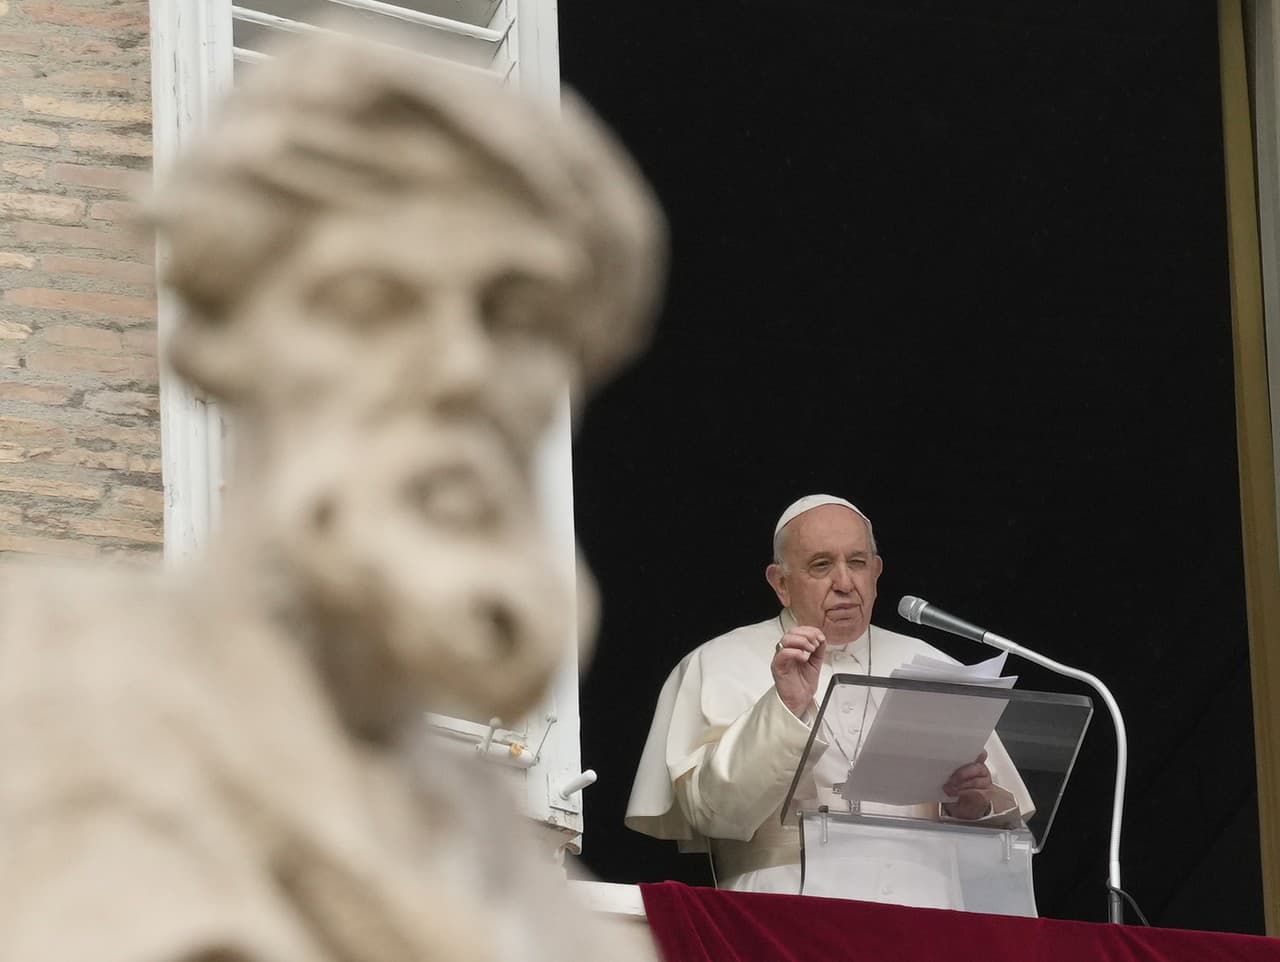 Pápež František počas svojho príhovoru na Námestí sv. Petra vo Vatikáne